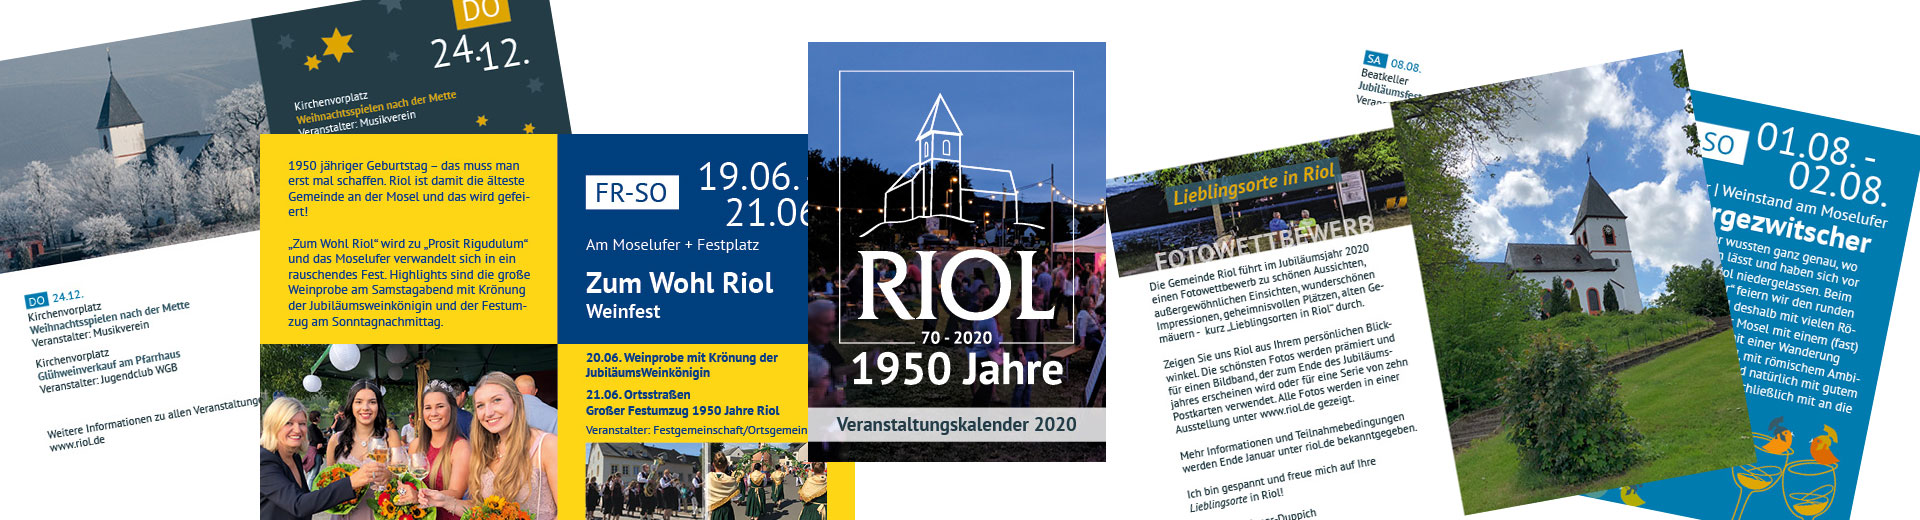 Ausschnitte Veranstaltungskalender Riol 2020